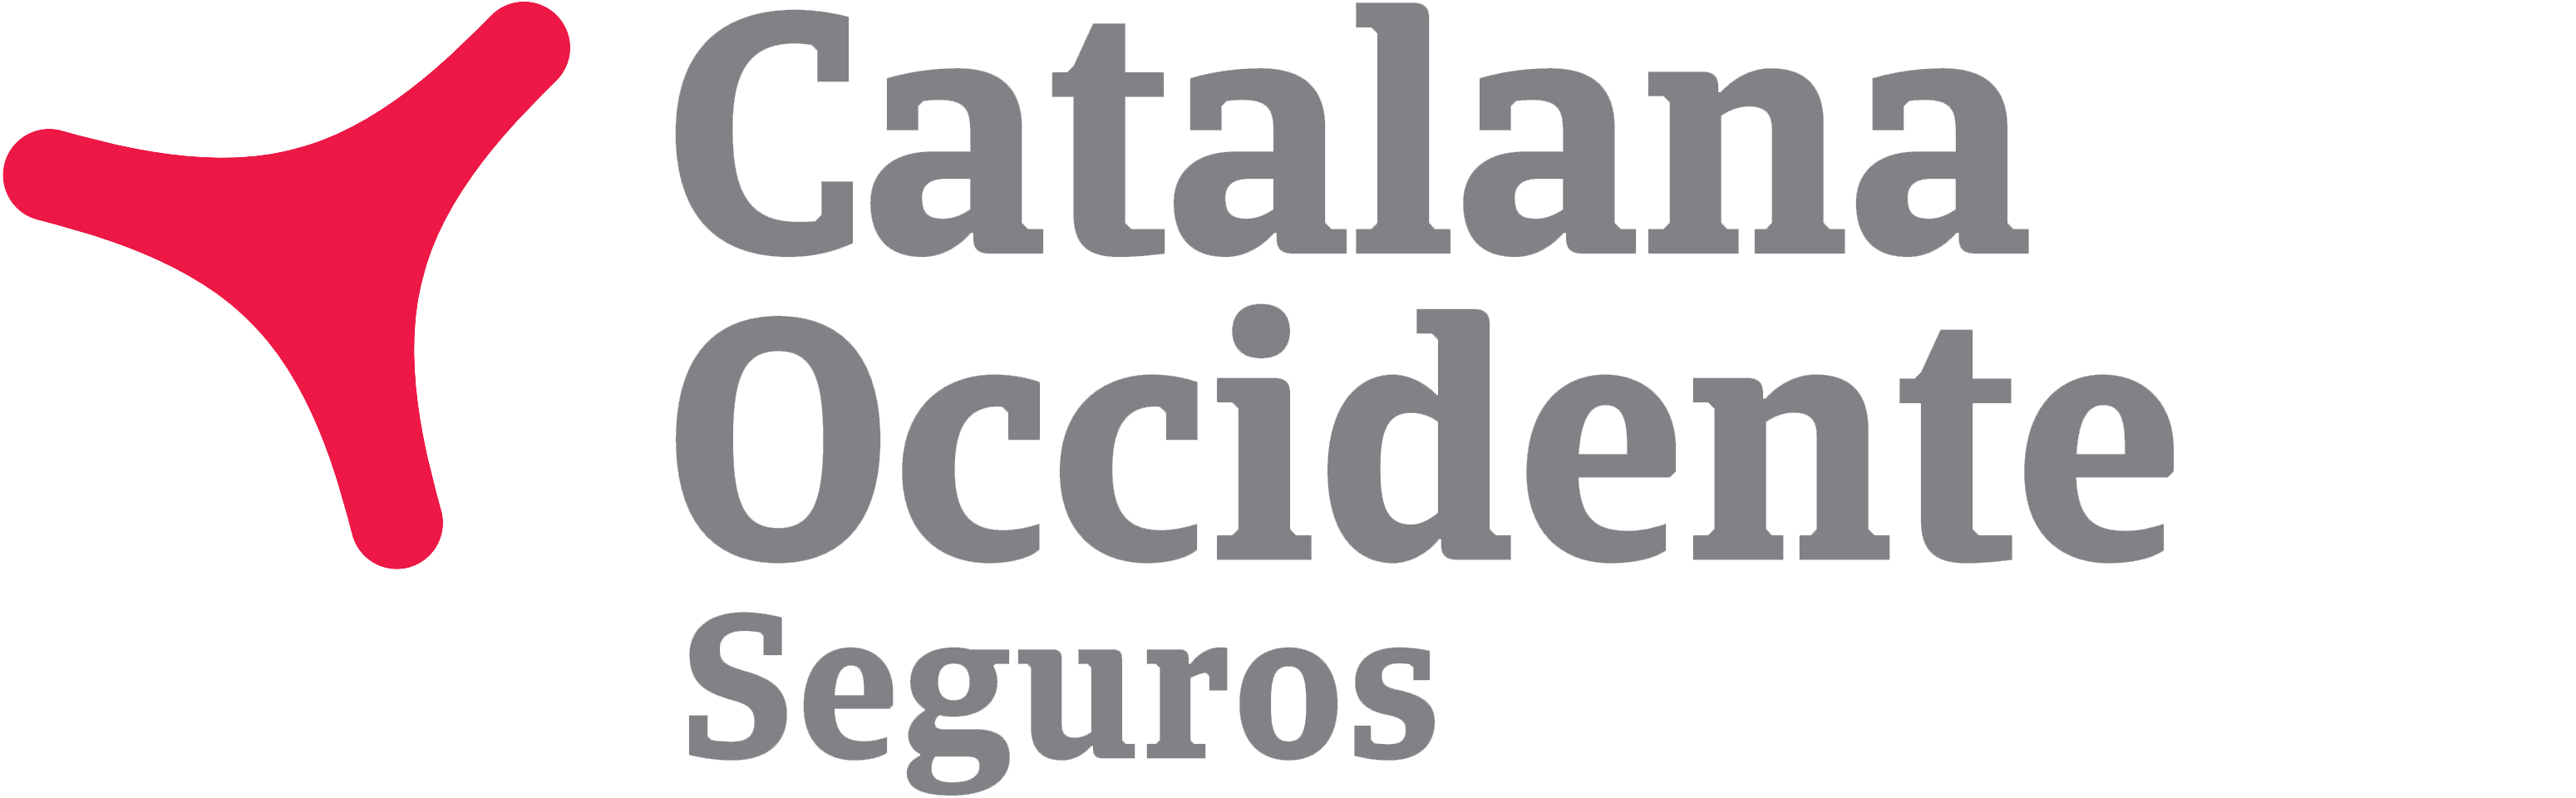 Catalana Occidente - SegurosyAseguradoras.com